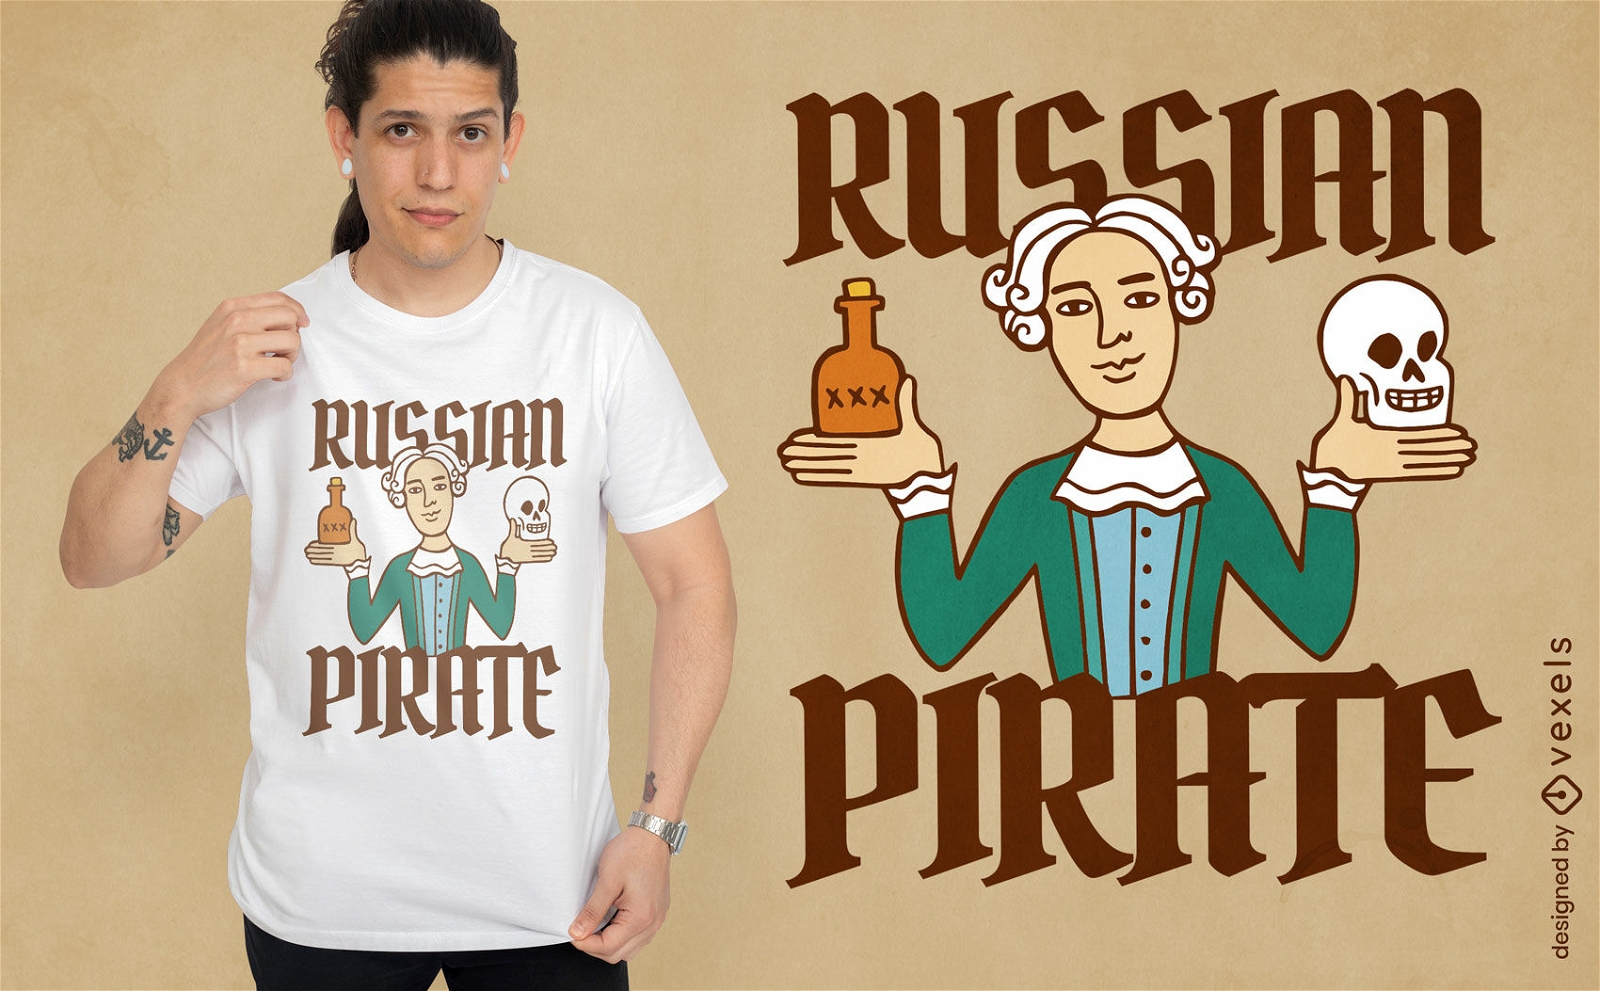 Dise?o de camiseta de pirata ruso.